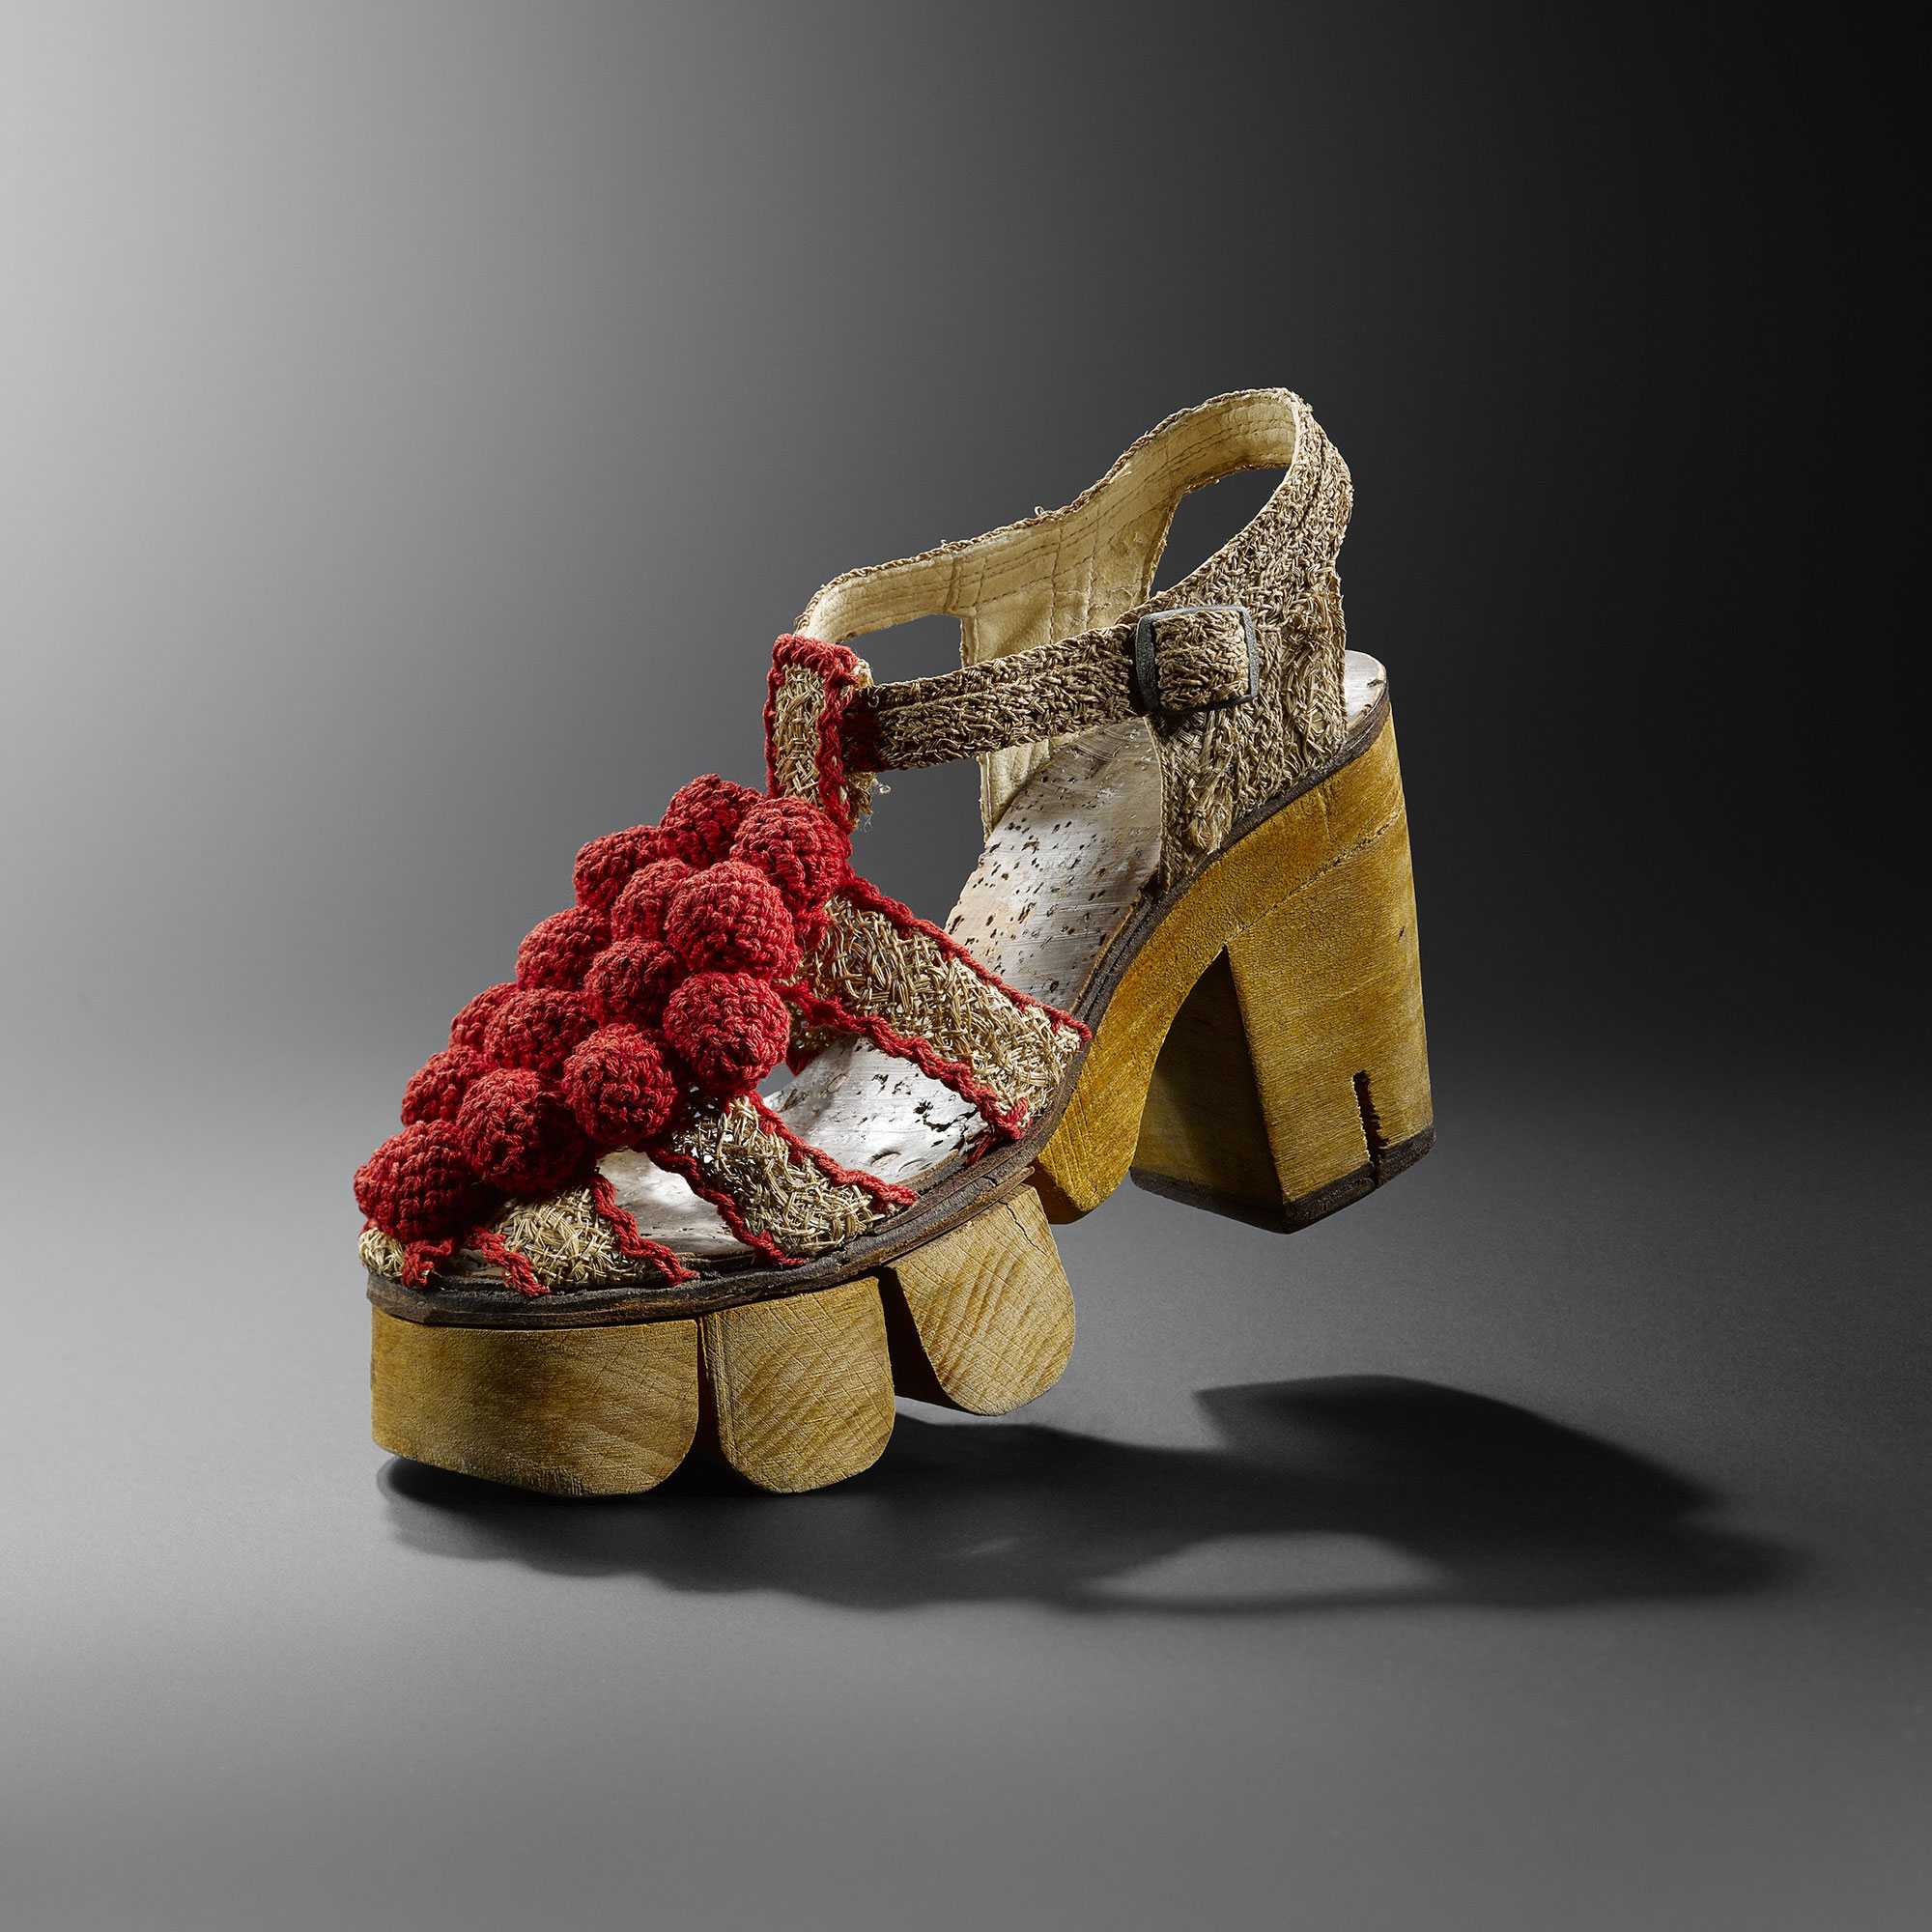 Des Chaussures Exceptionnelles :: Musée de la chaussure